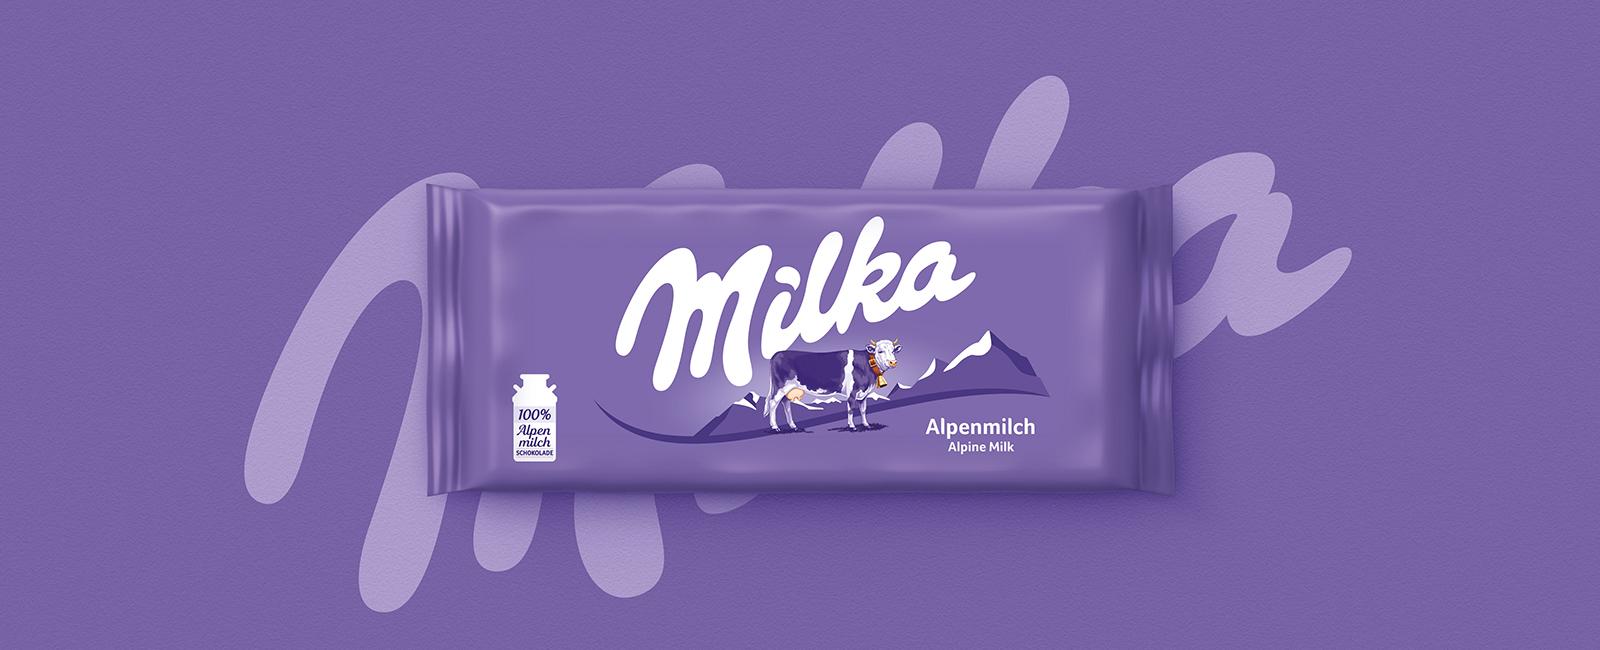 Milka Logo - Chocolate Brand Milka Unwraps a New Global Identity